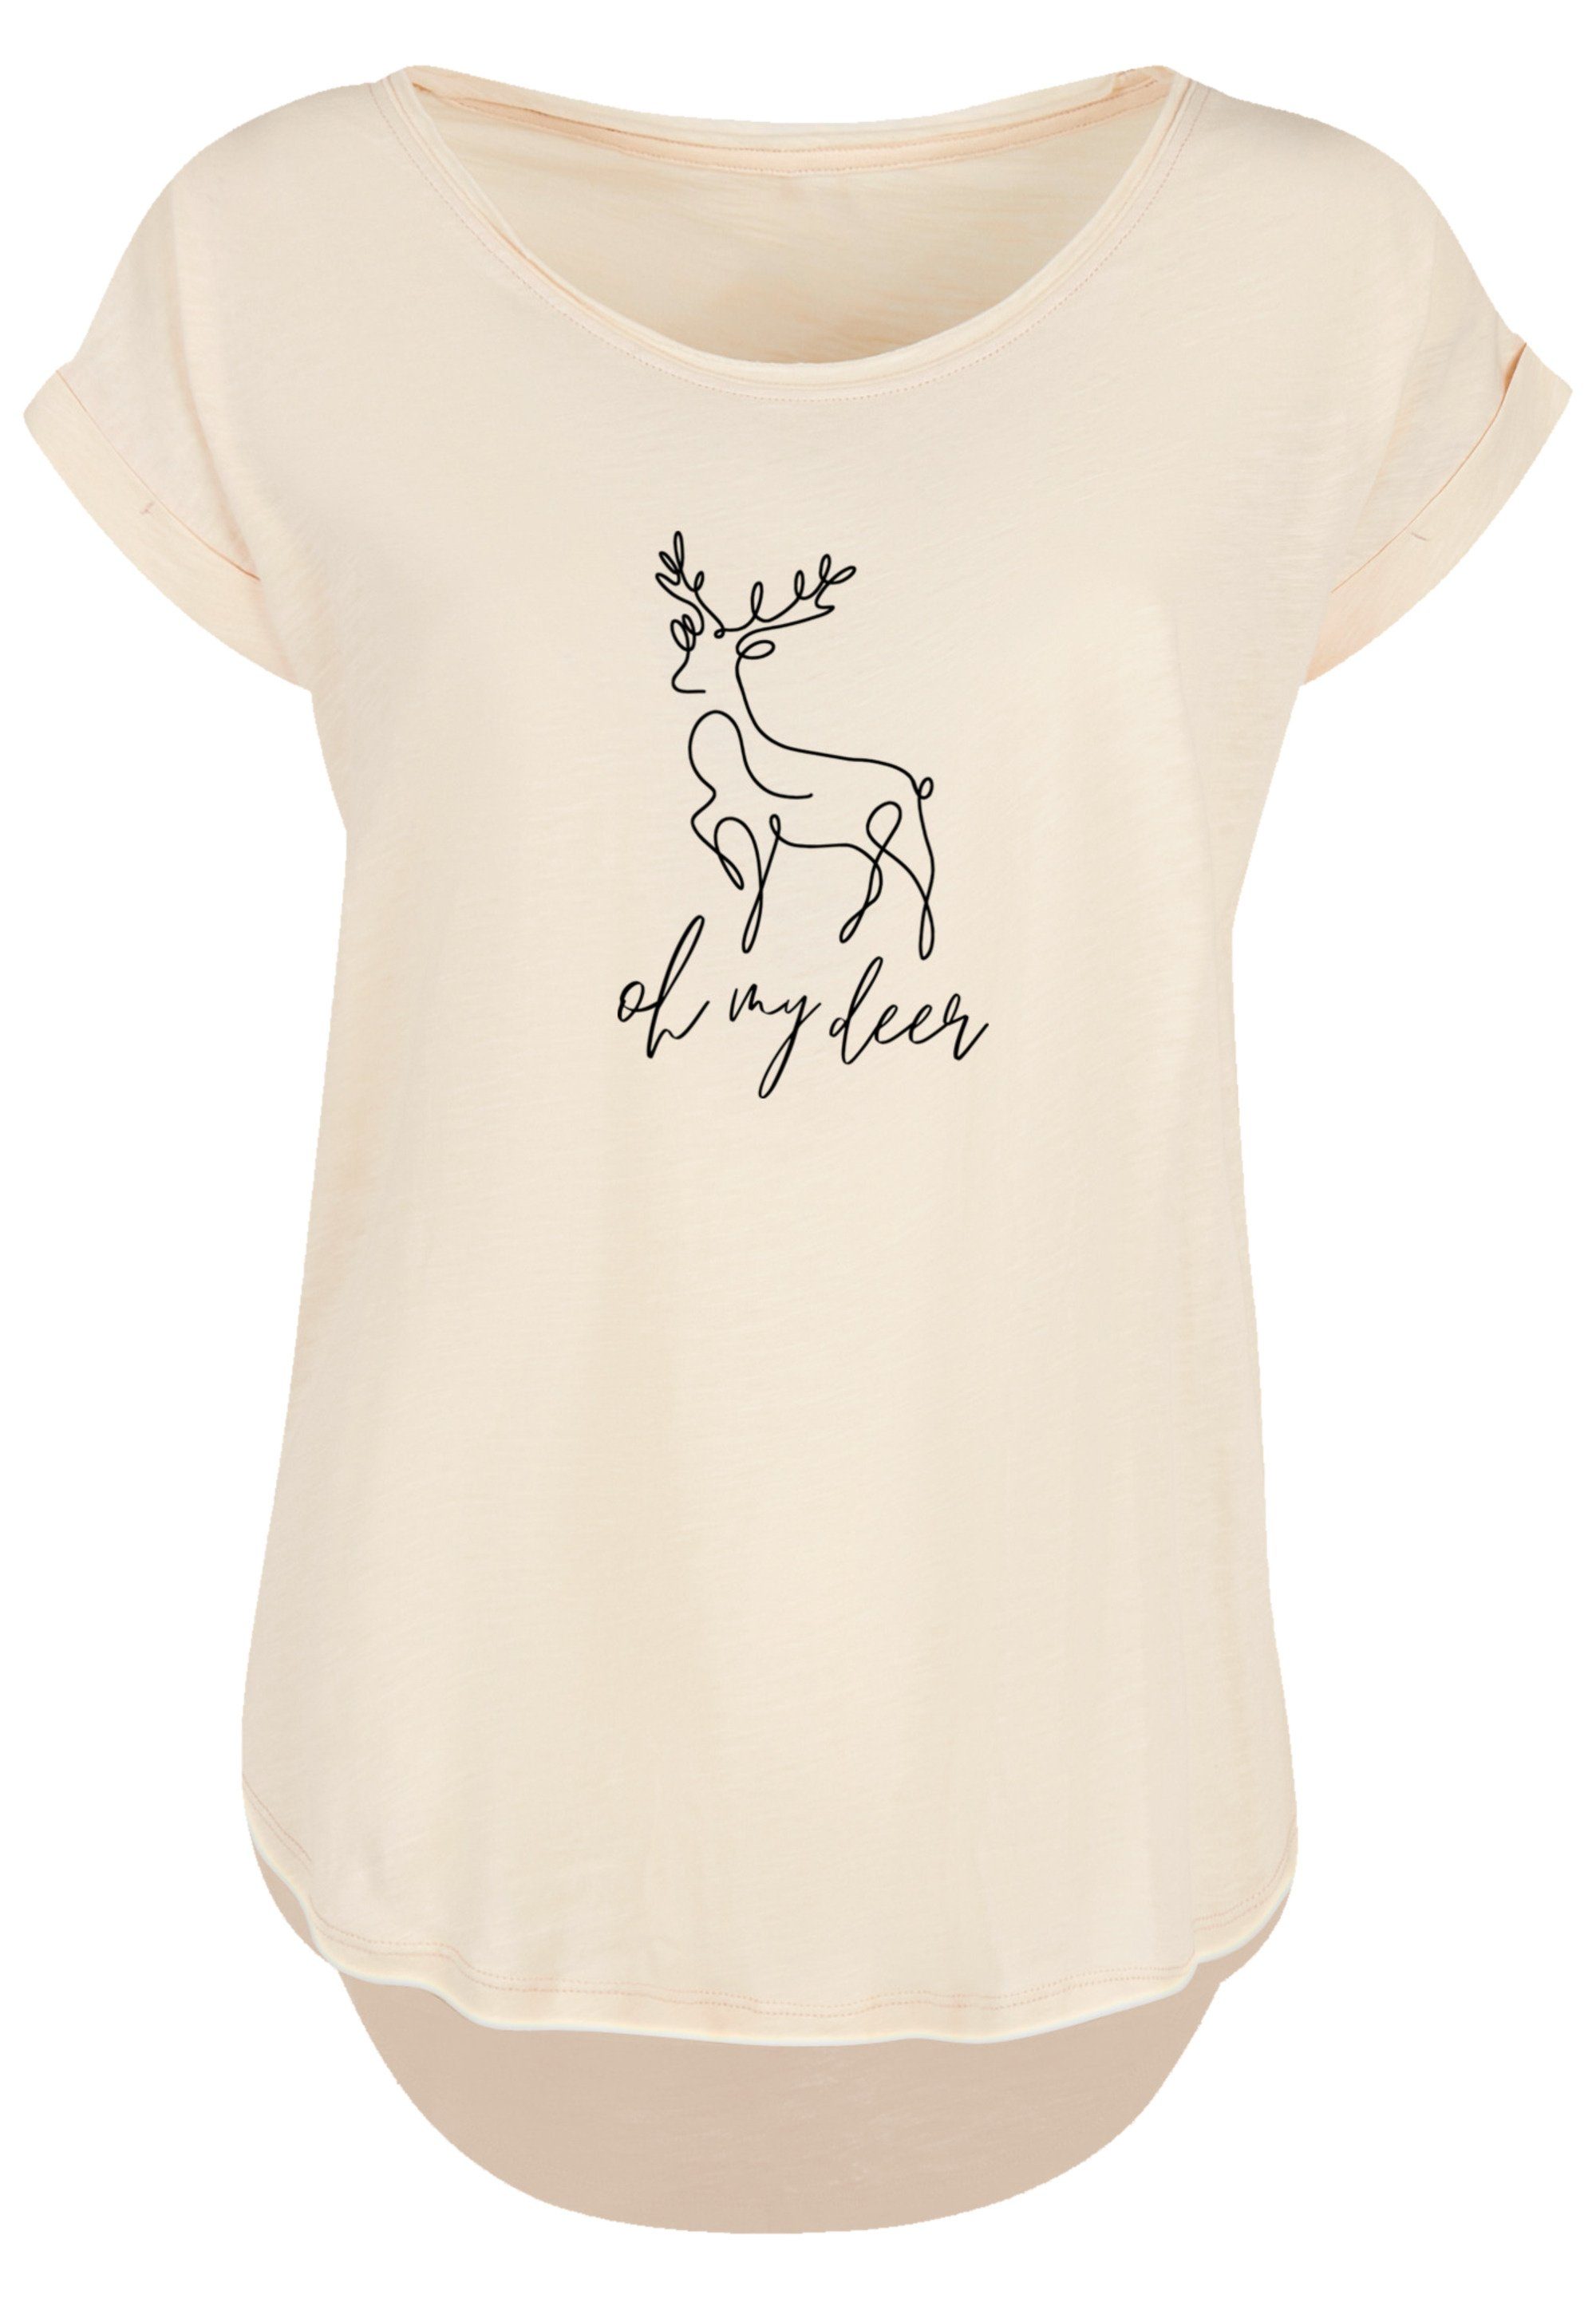 geschnittenes Band, Damen T-Shirt Premium T-Shirt extra F4NT4STIC Deer Christmas lang Qualität, Hinten Winter Rock-Musik,